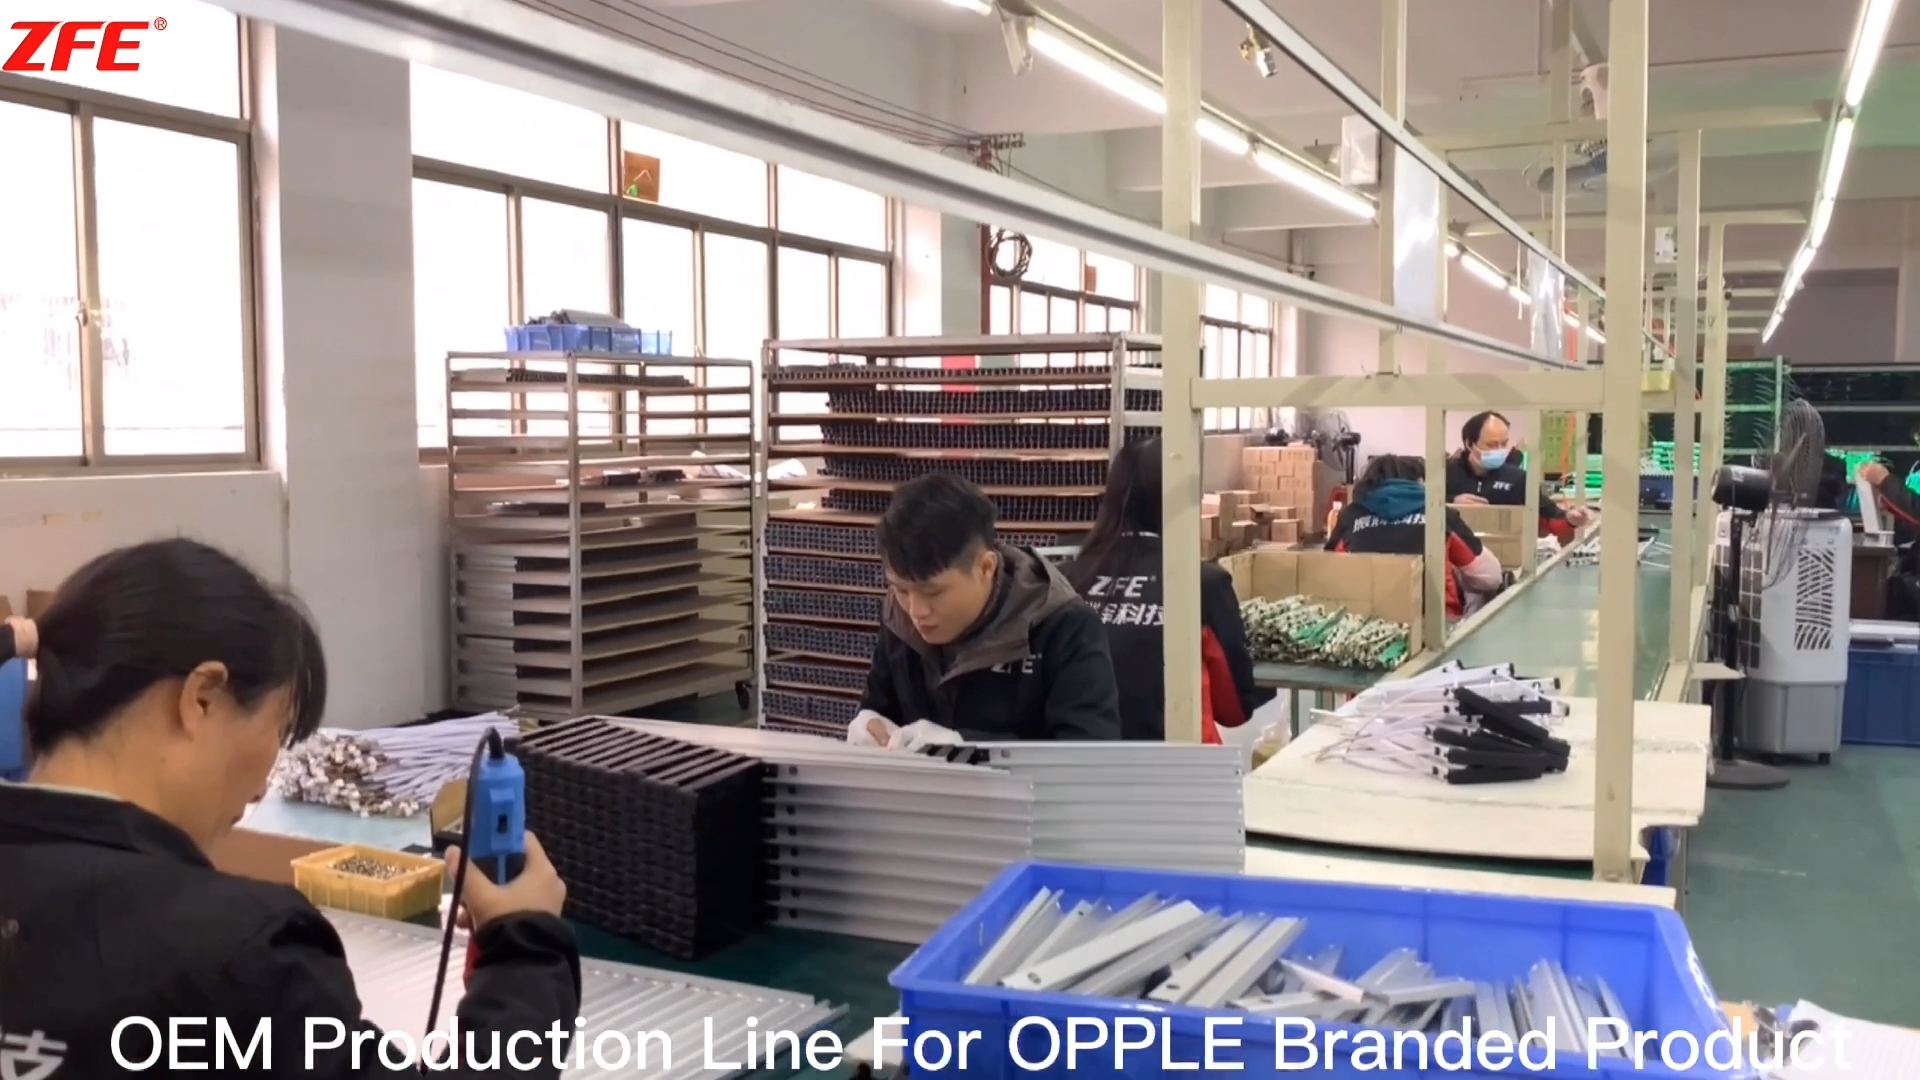 خط إنتاج OEM مخصص للمنتجات ذات العلامات التجارية OPPLE المصنعة بواسطة Guangdong Zhenhui Fire Technology